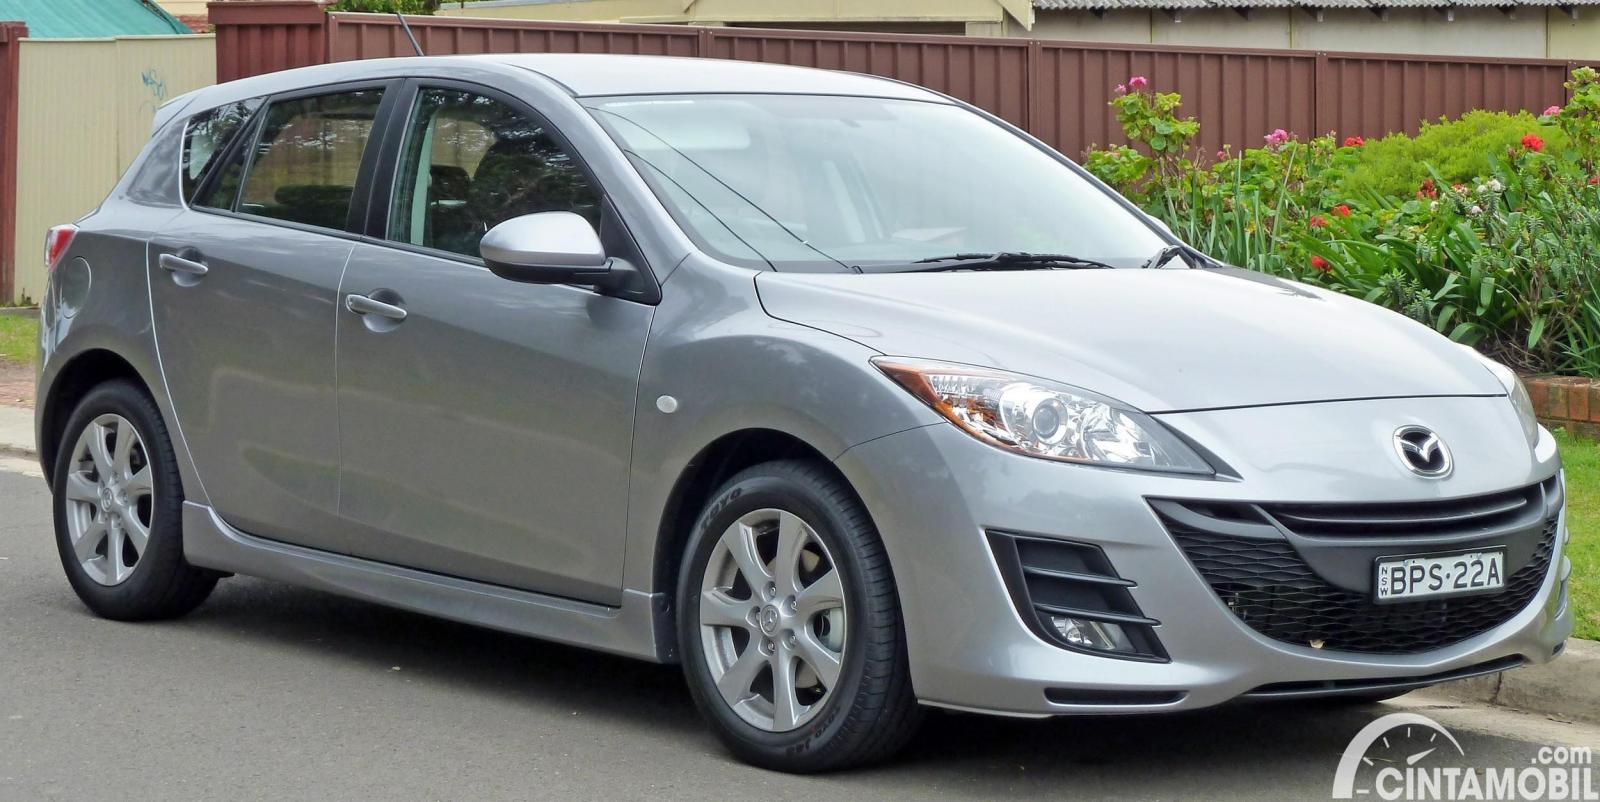 Gambar menunjukkan generasi kedua dari Mazda 3